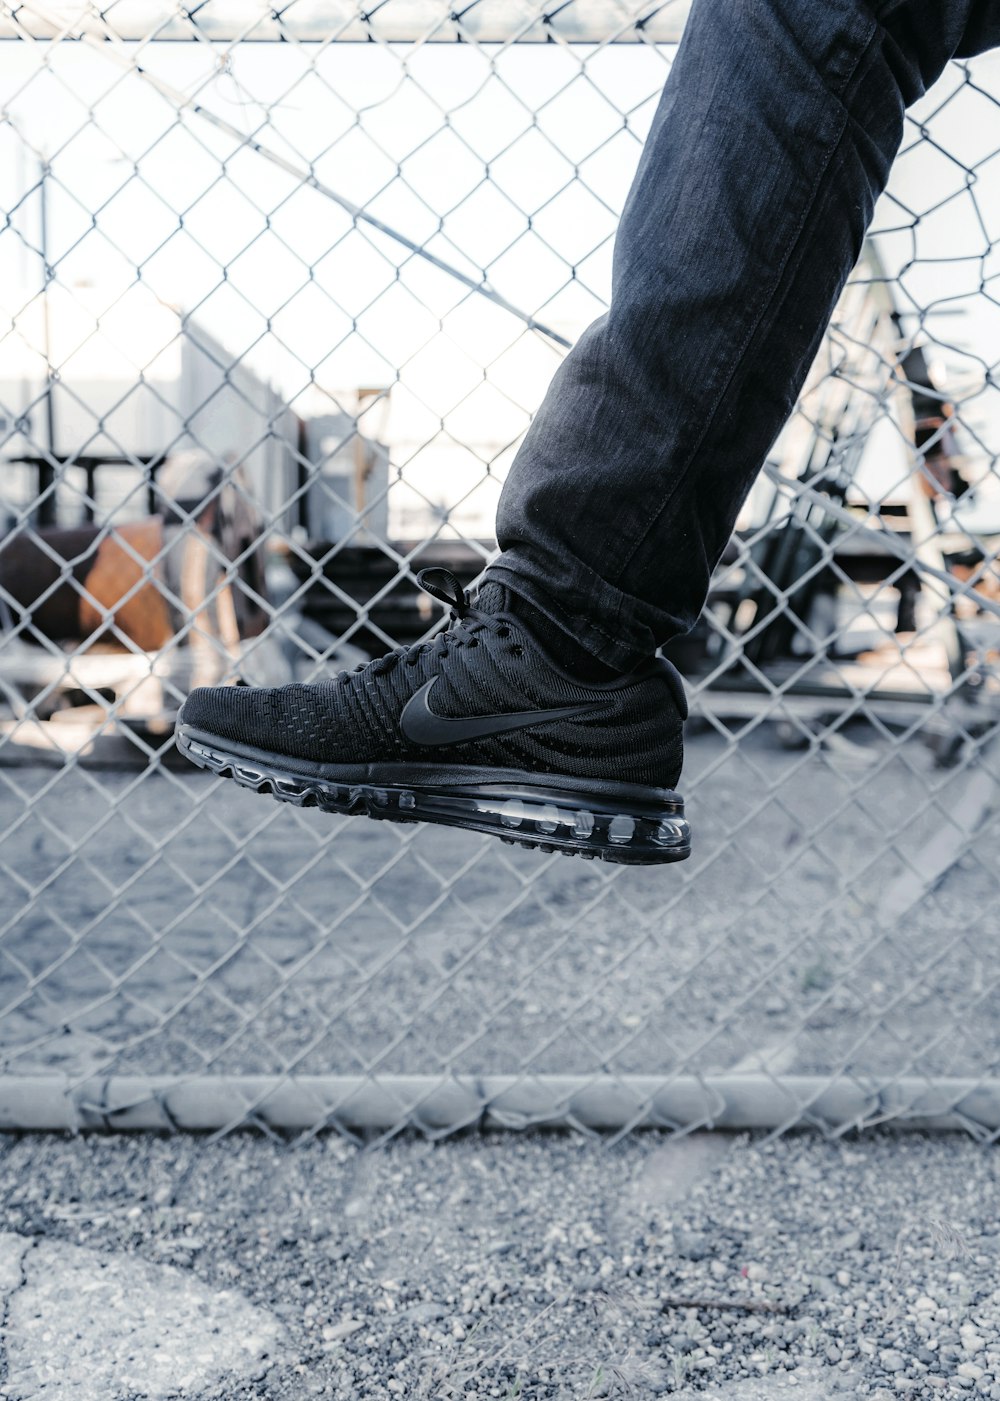 Foto de persona con zapatillas Nike negras – Imagen gratuita Centro en  Unsplash